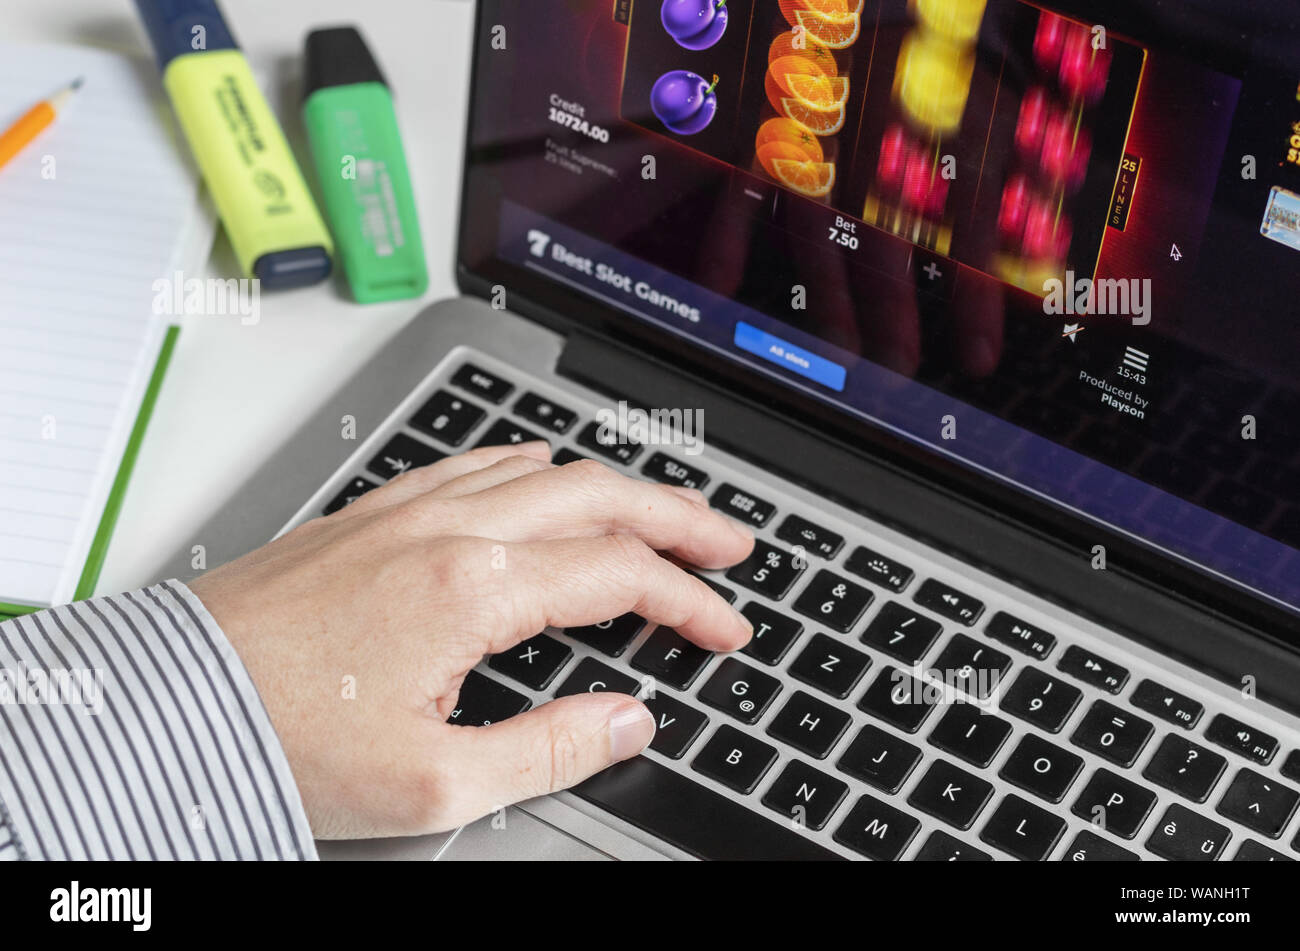 London / UK - 14 agosto 2019 - Il gioco d'azzardo online sul posto di lavoro e la persona alla tastiera di un computer la riproduzione di frutta slot machine Foto Stock